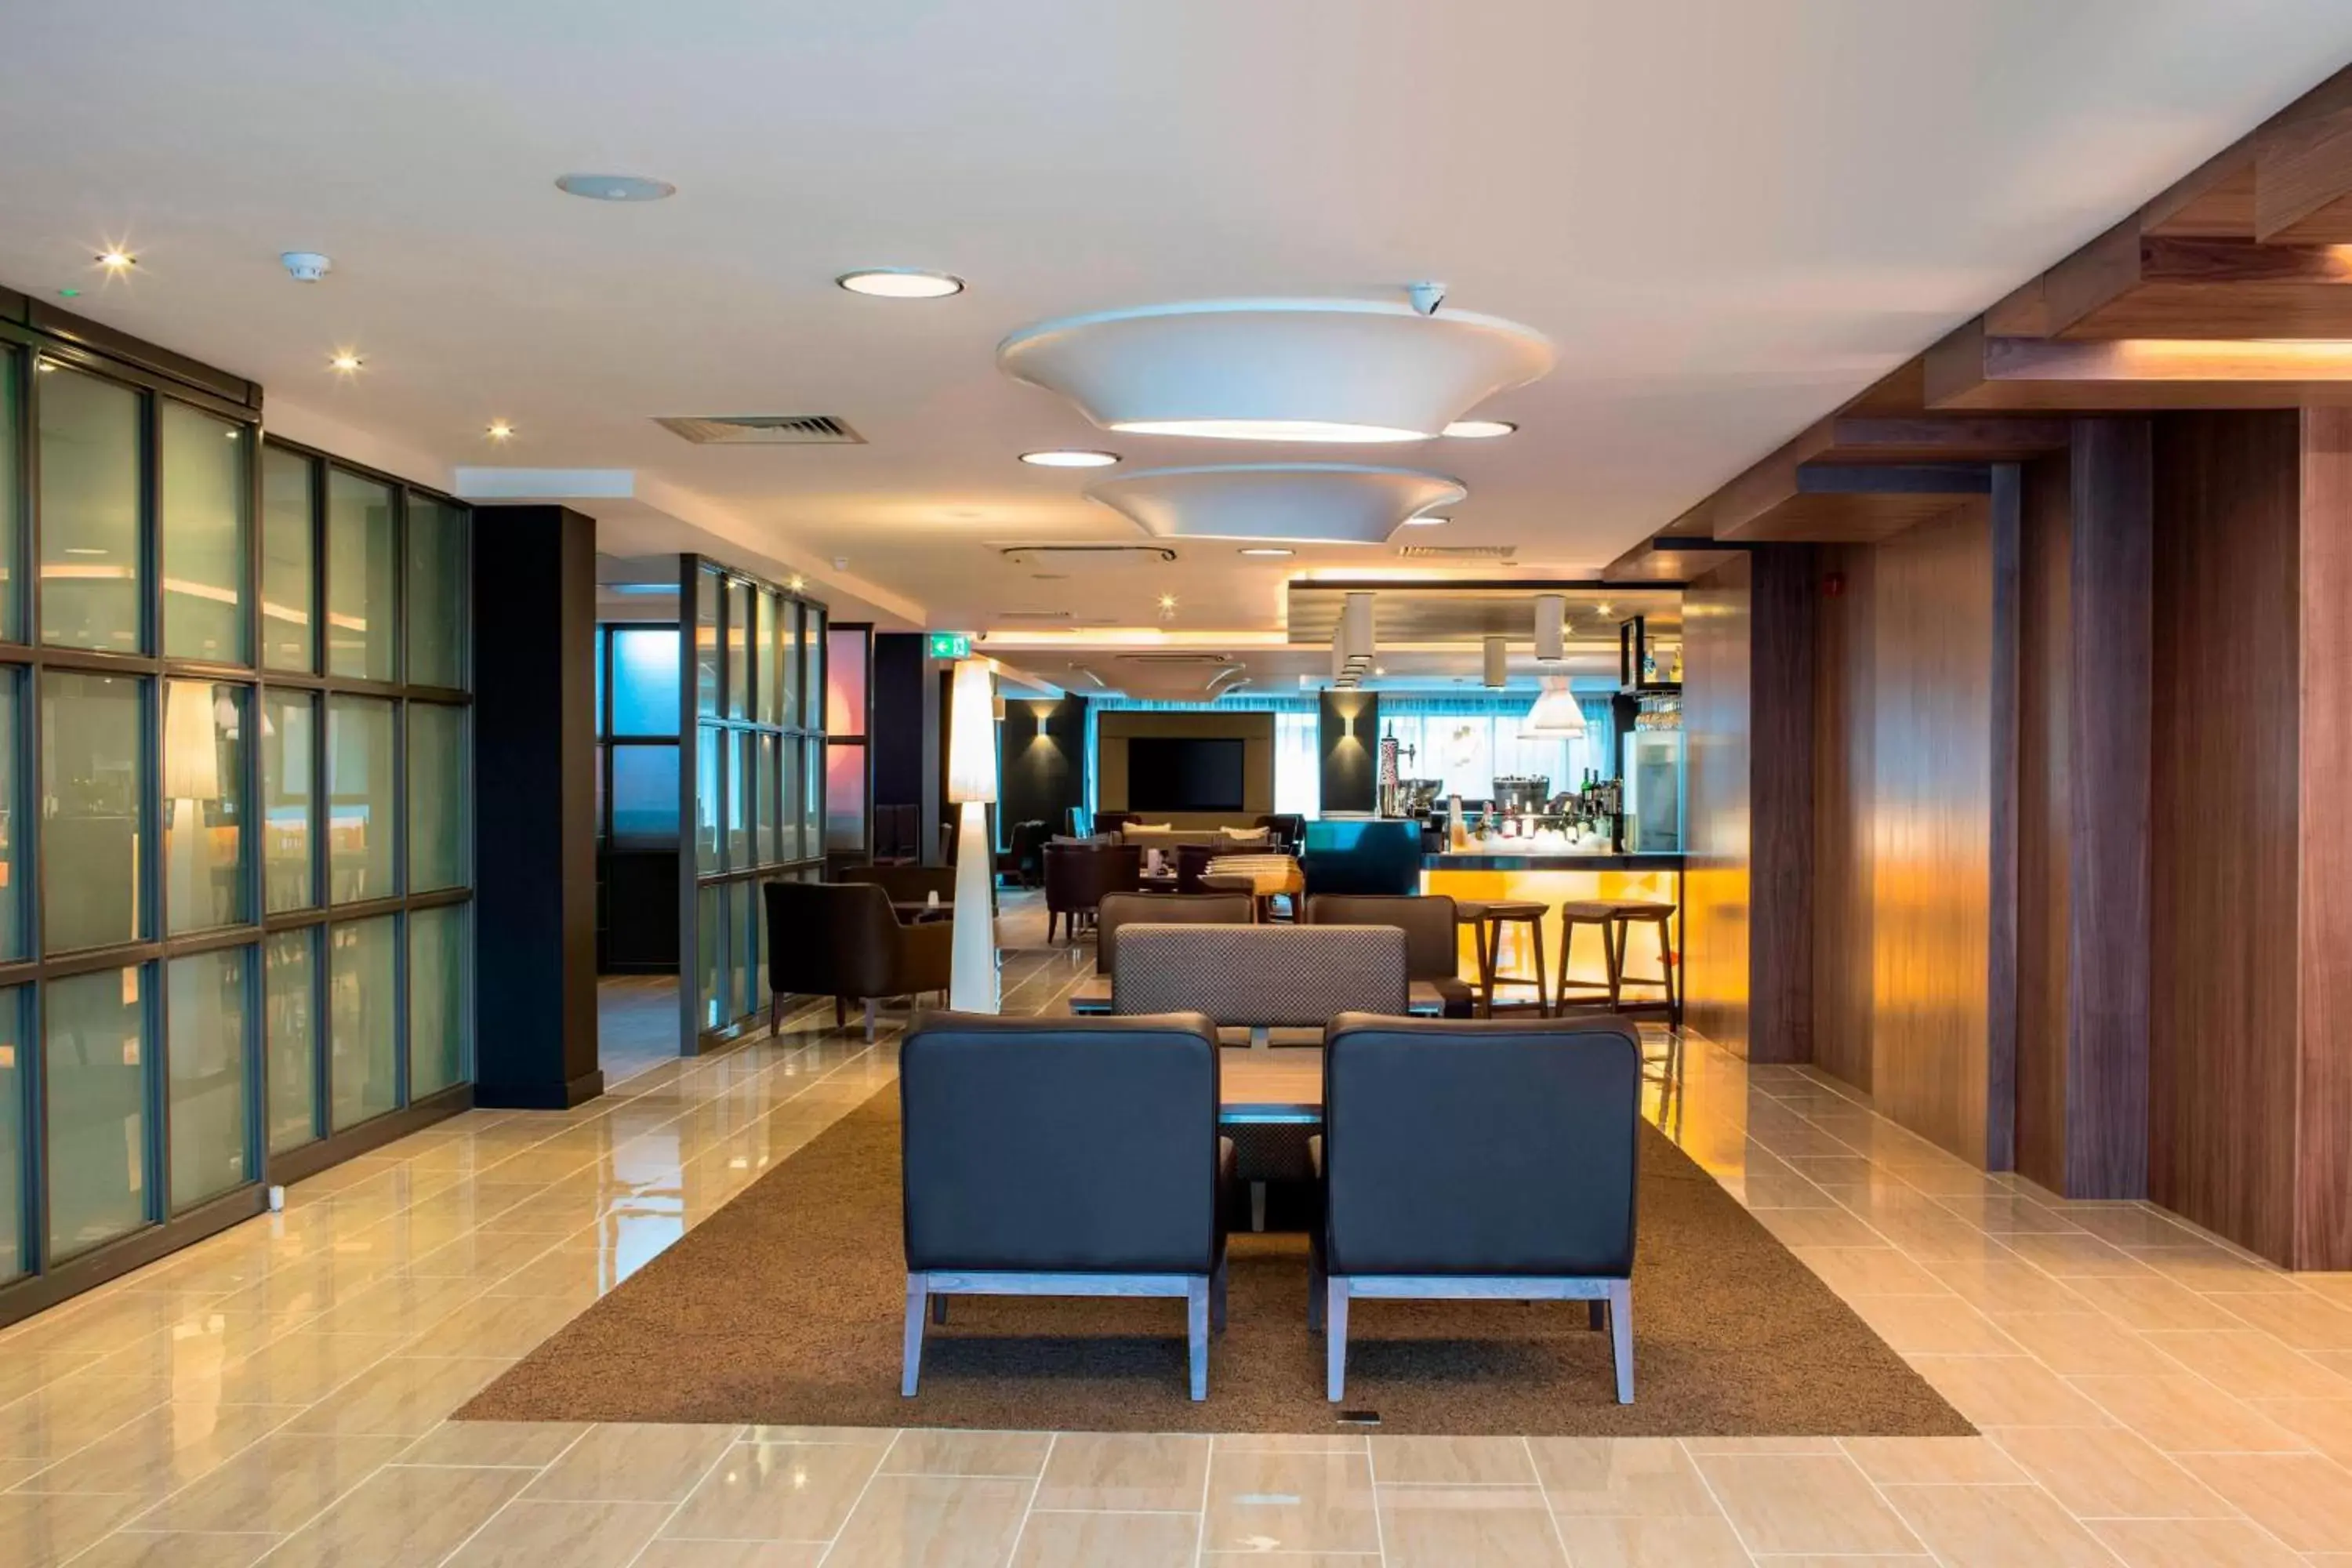 Lobby or reception, Lobby/Reception in AC Hotel by Marriott Birmingham